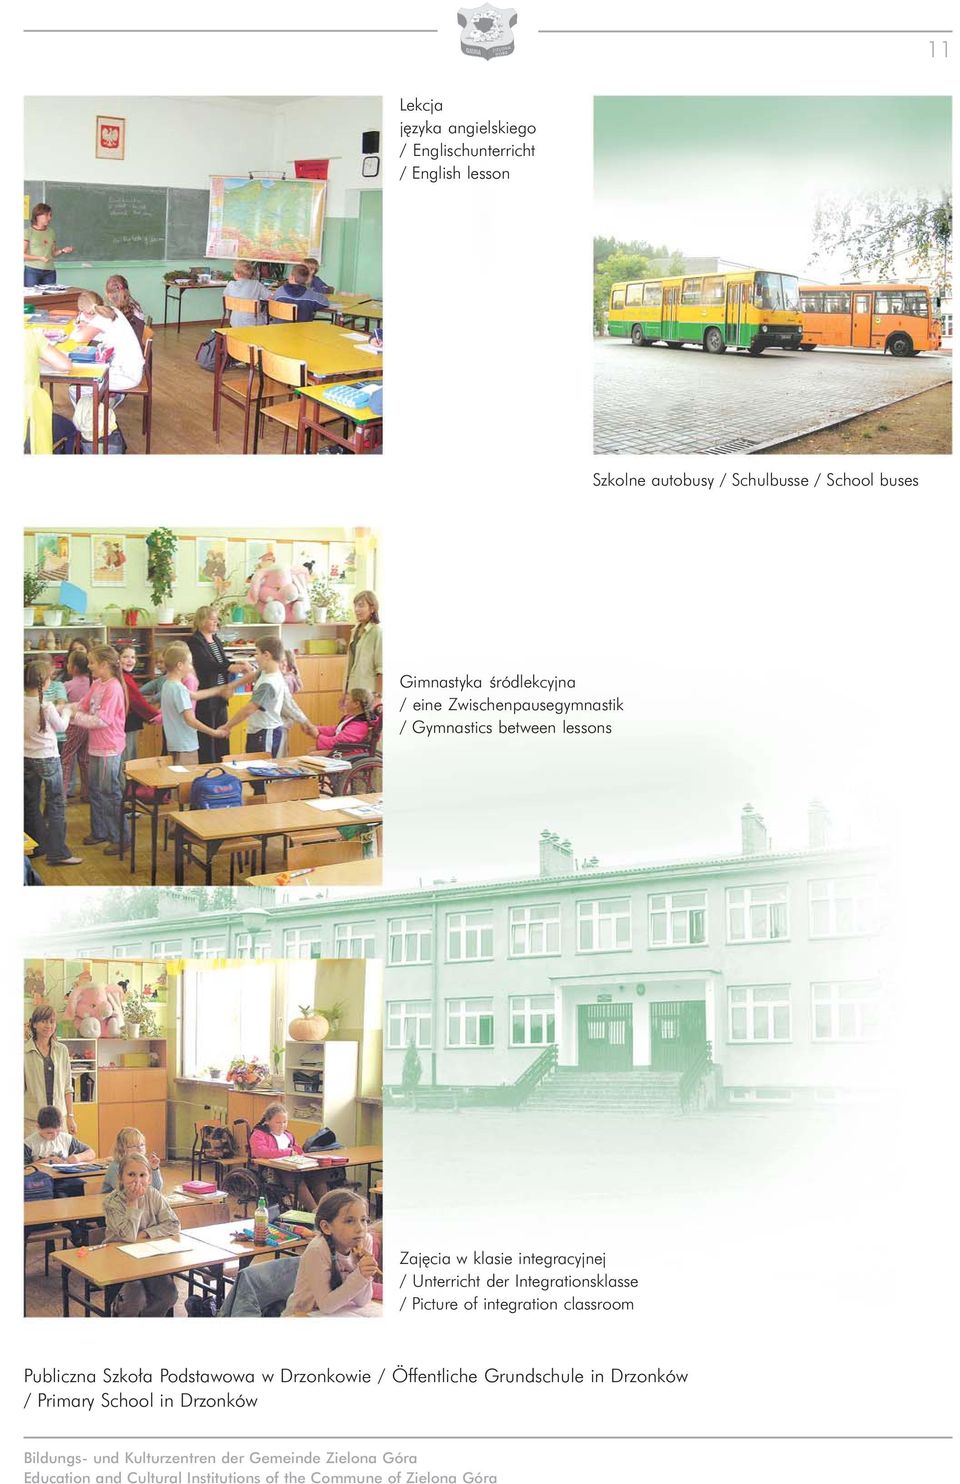 Integrationsklasse / Picture of integration classroom Publiczna Szko³a Podstawowa w Drzonkowie / Öffentliche Grundschule in